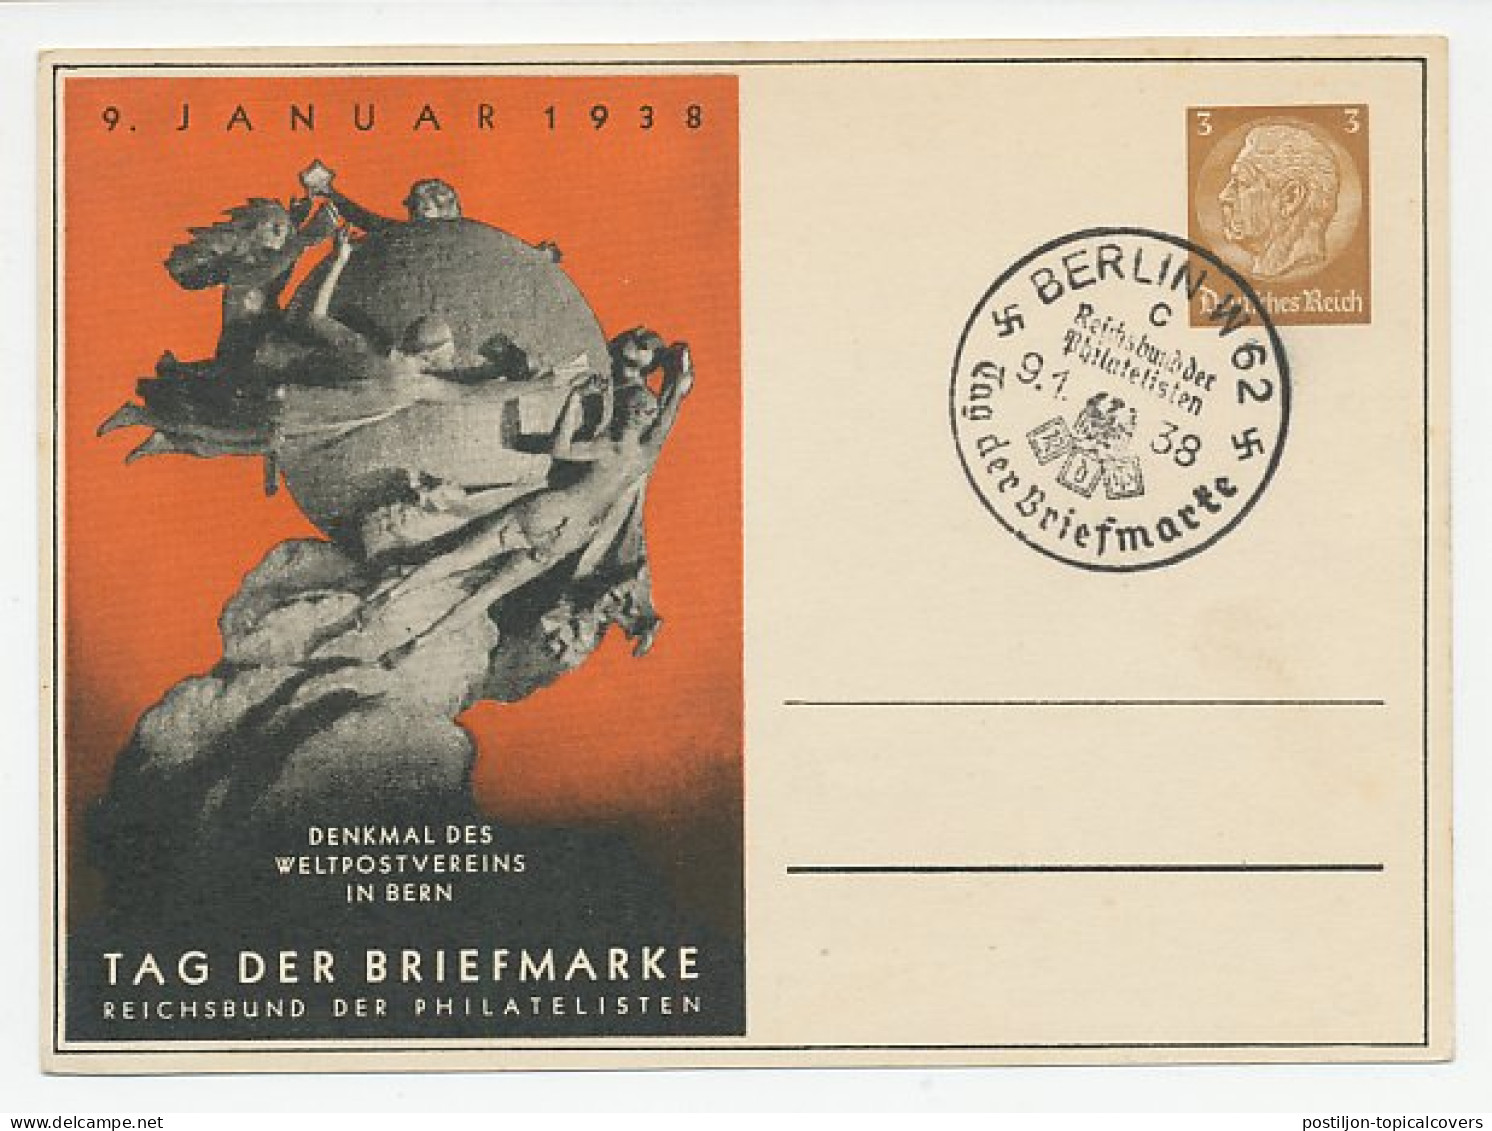 Postal Stationery Germany 1938 Universal Postal Union - WPV (Weltpostverein)